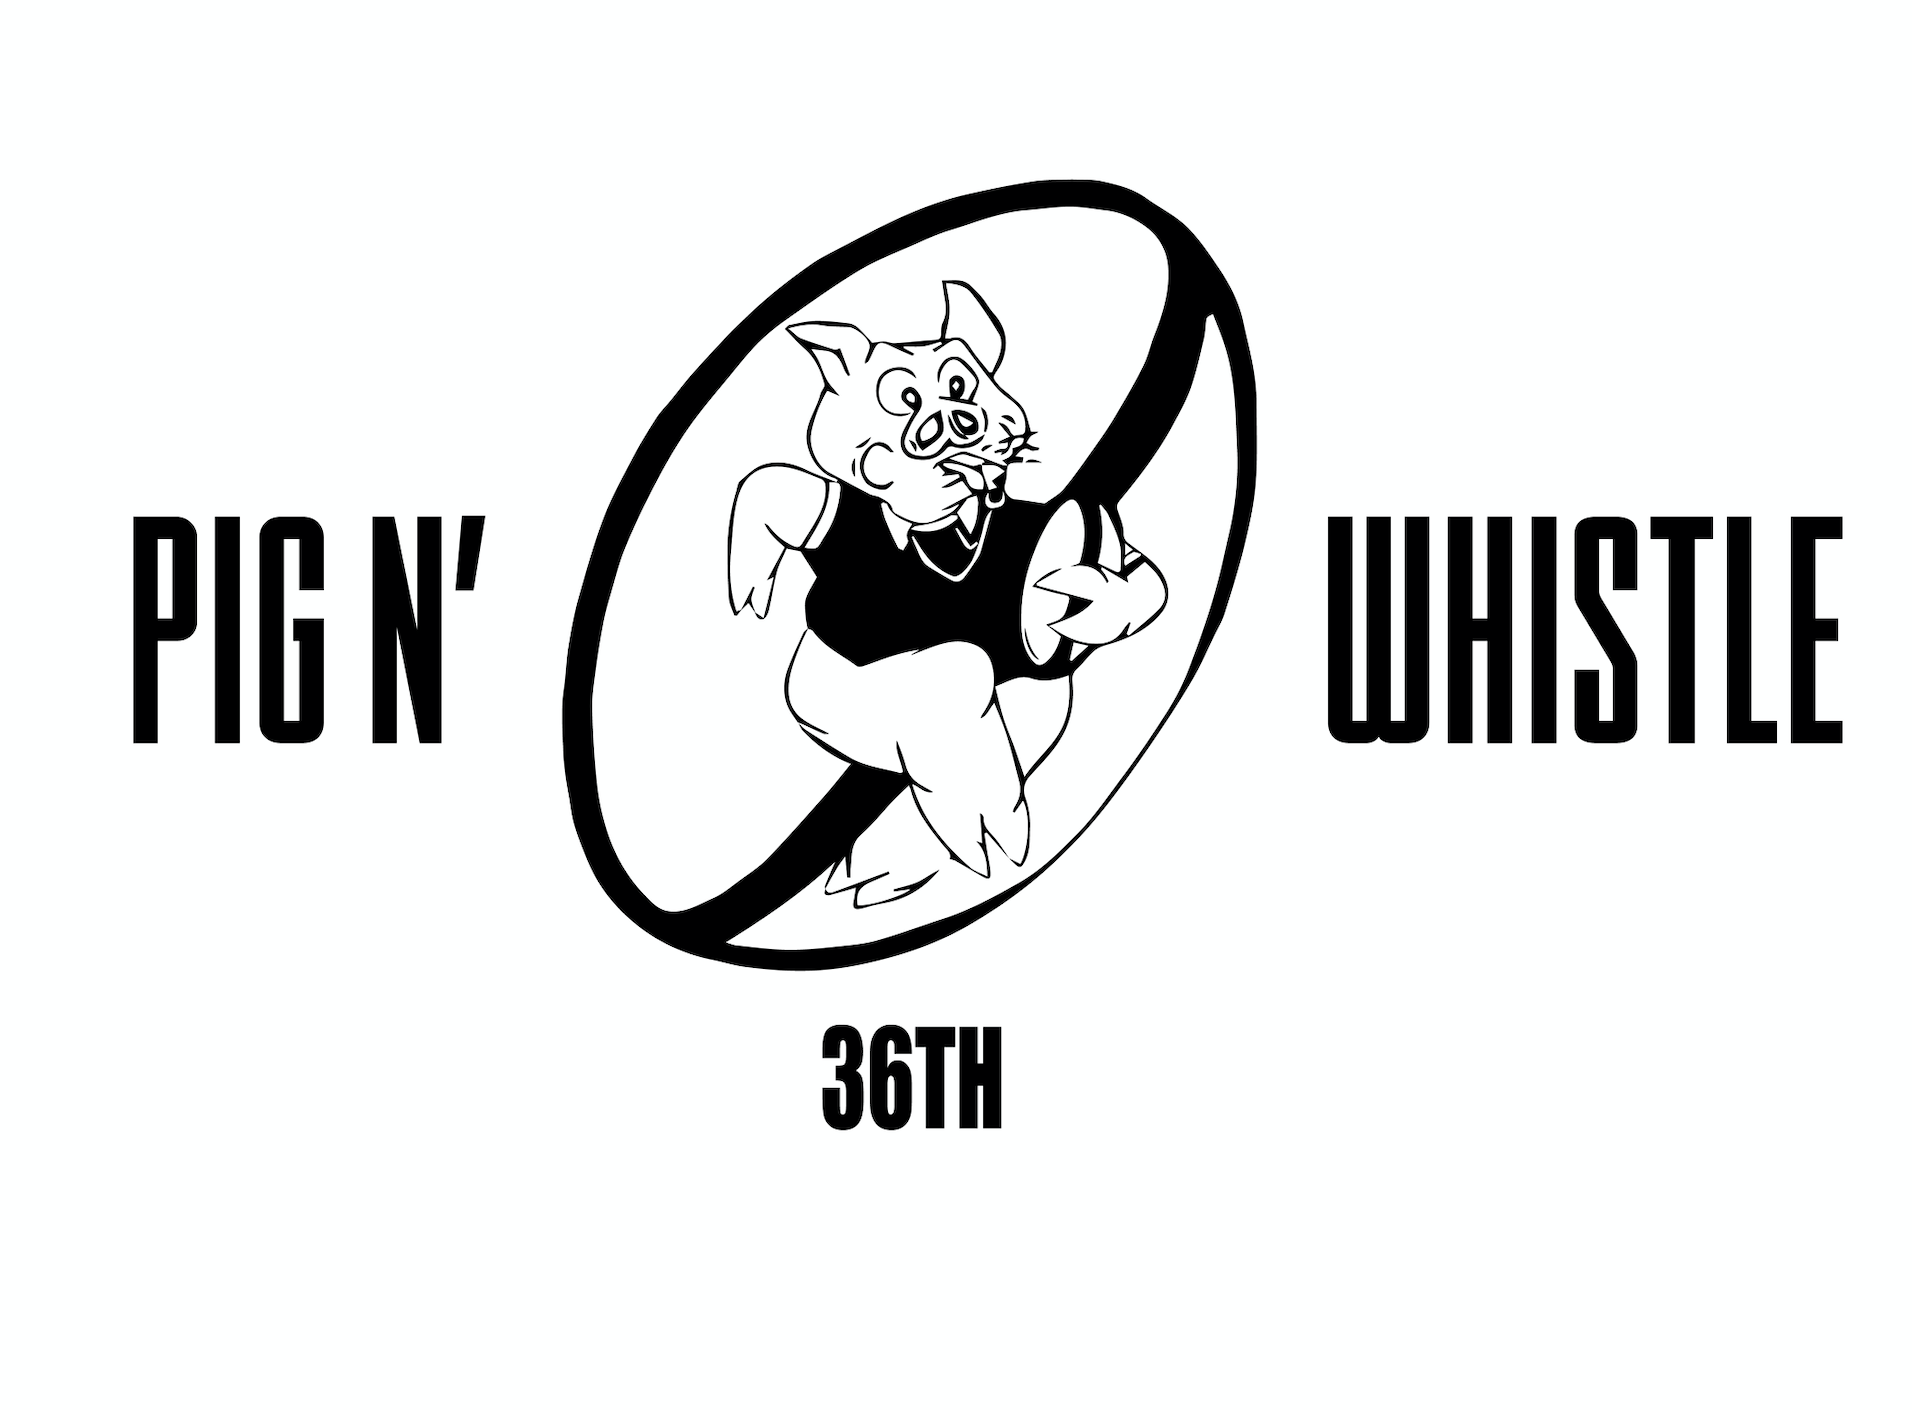 pignwhistle logo (2)